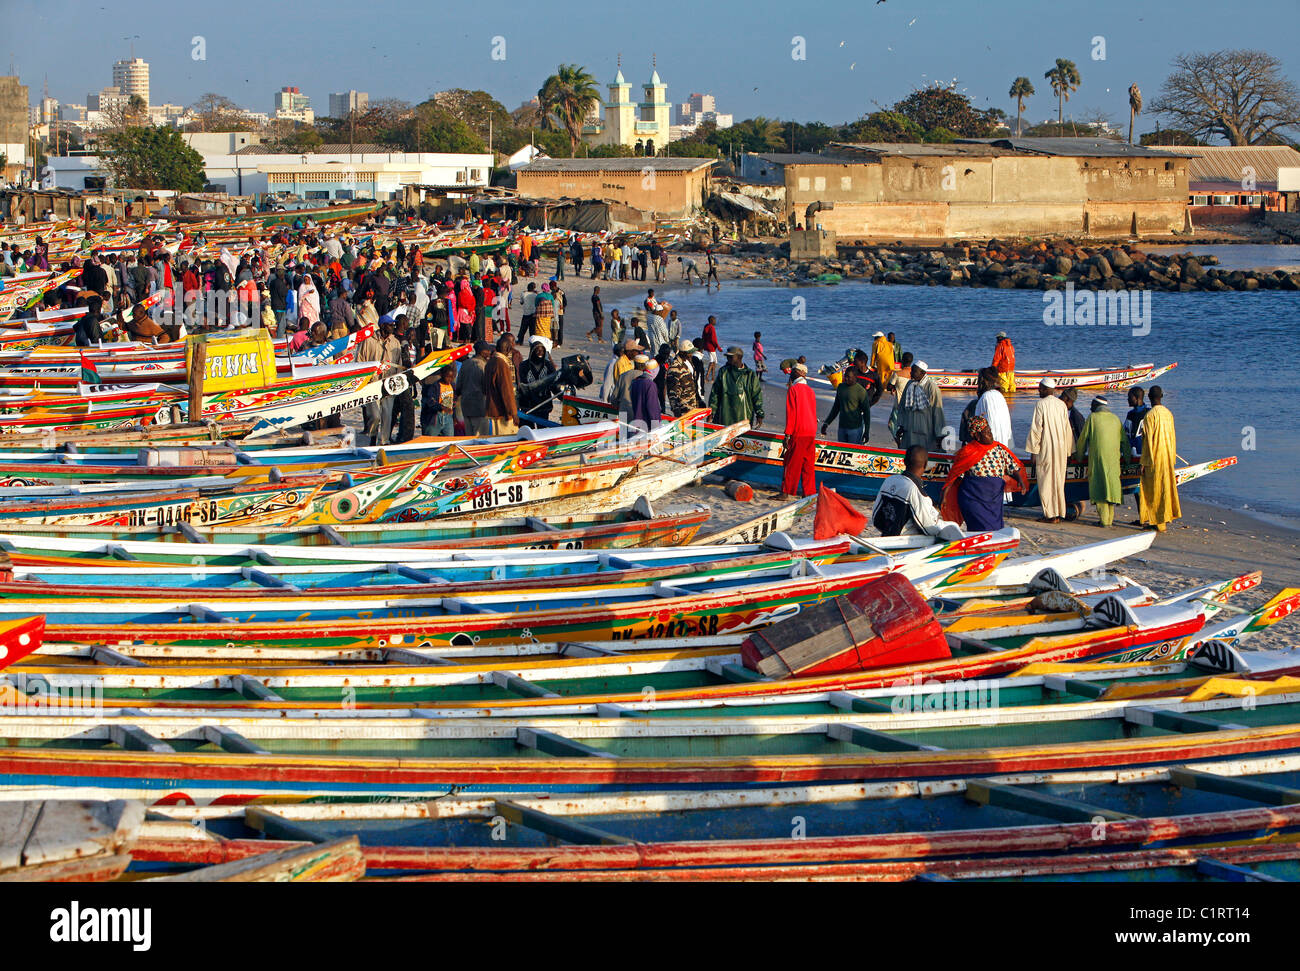 Pintado de colores vivos botes de pesca se alinean en la playa en el mercado de pescado en Dakar, Senegal Foto de stock